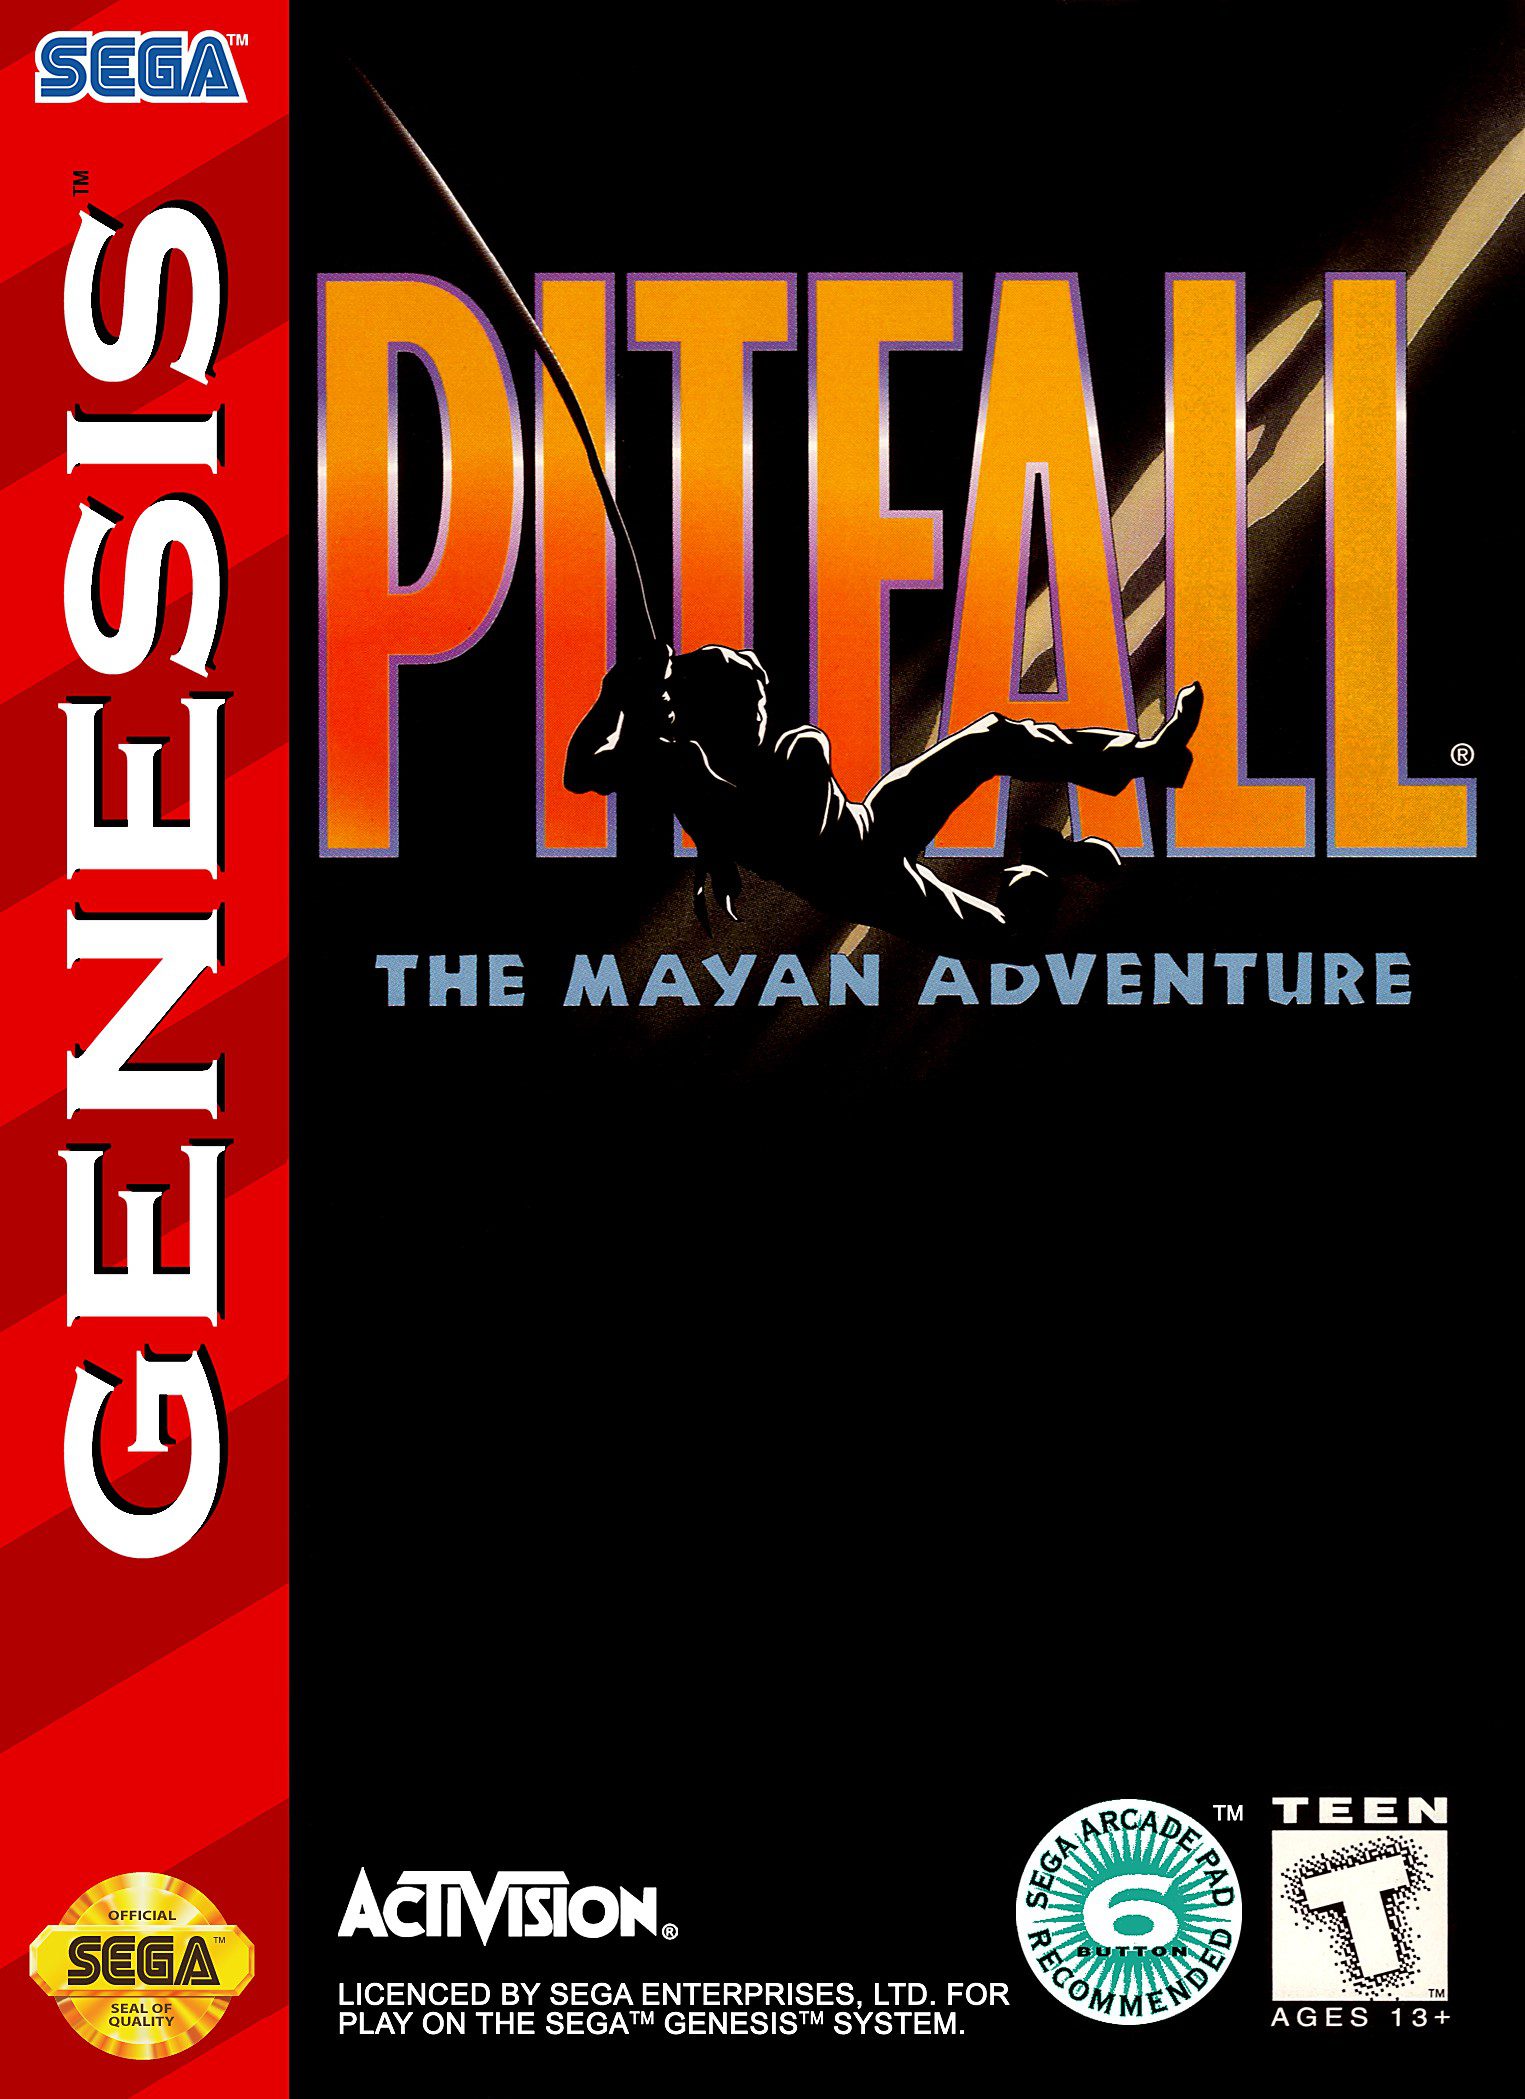 Pitfall: The Mayan Adventure for Sega Genesis